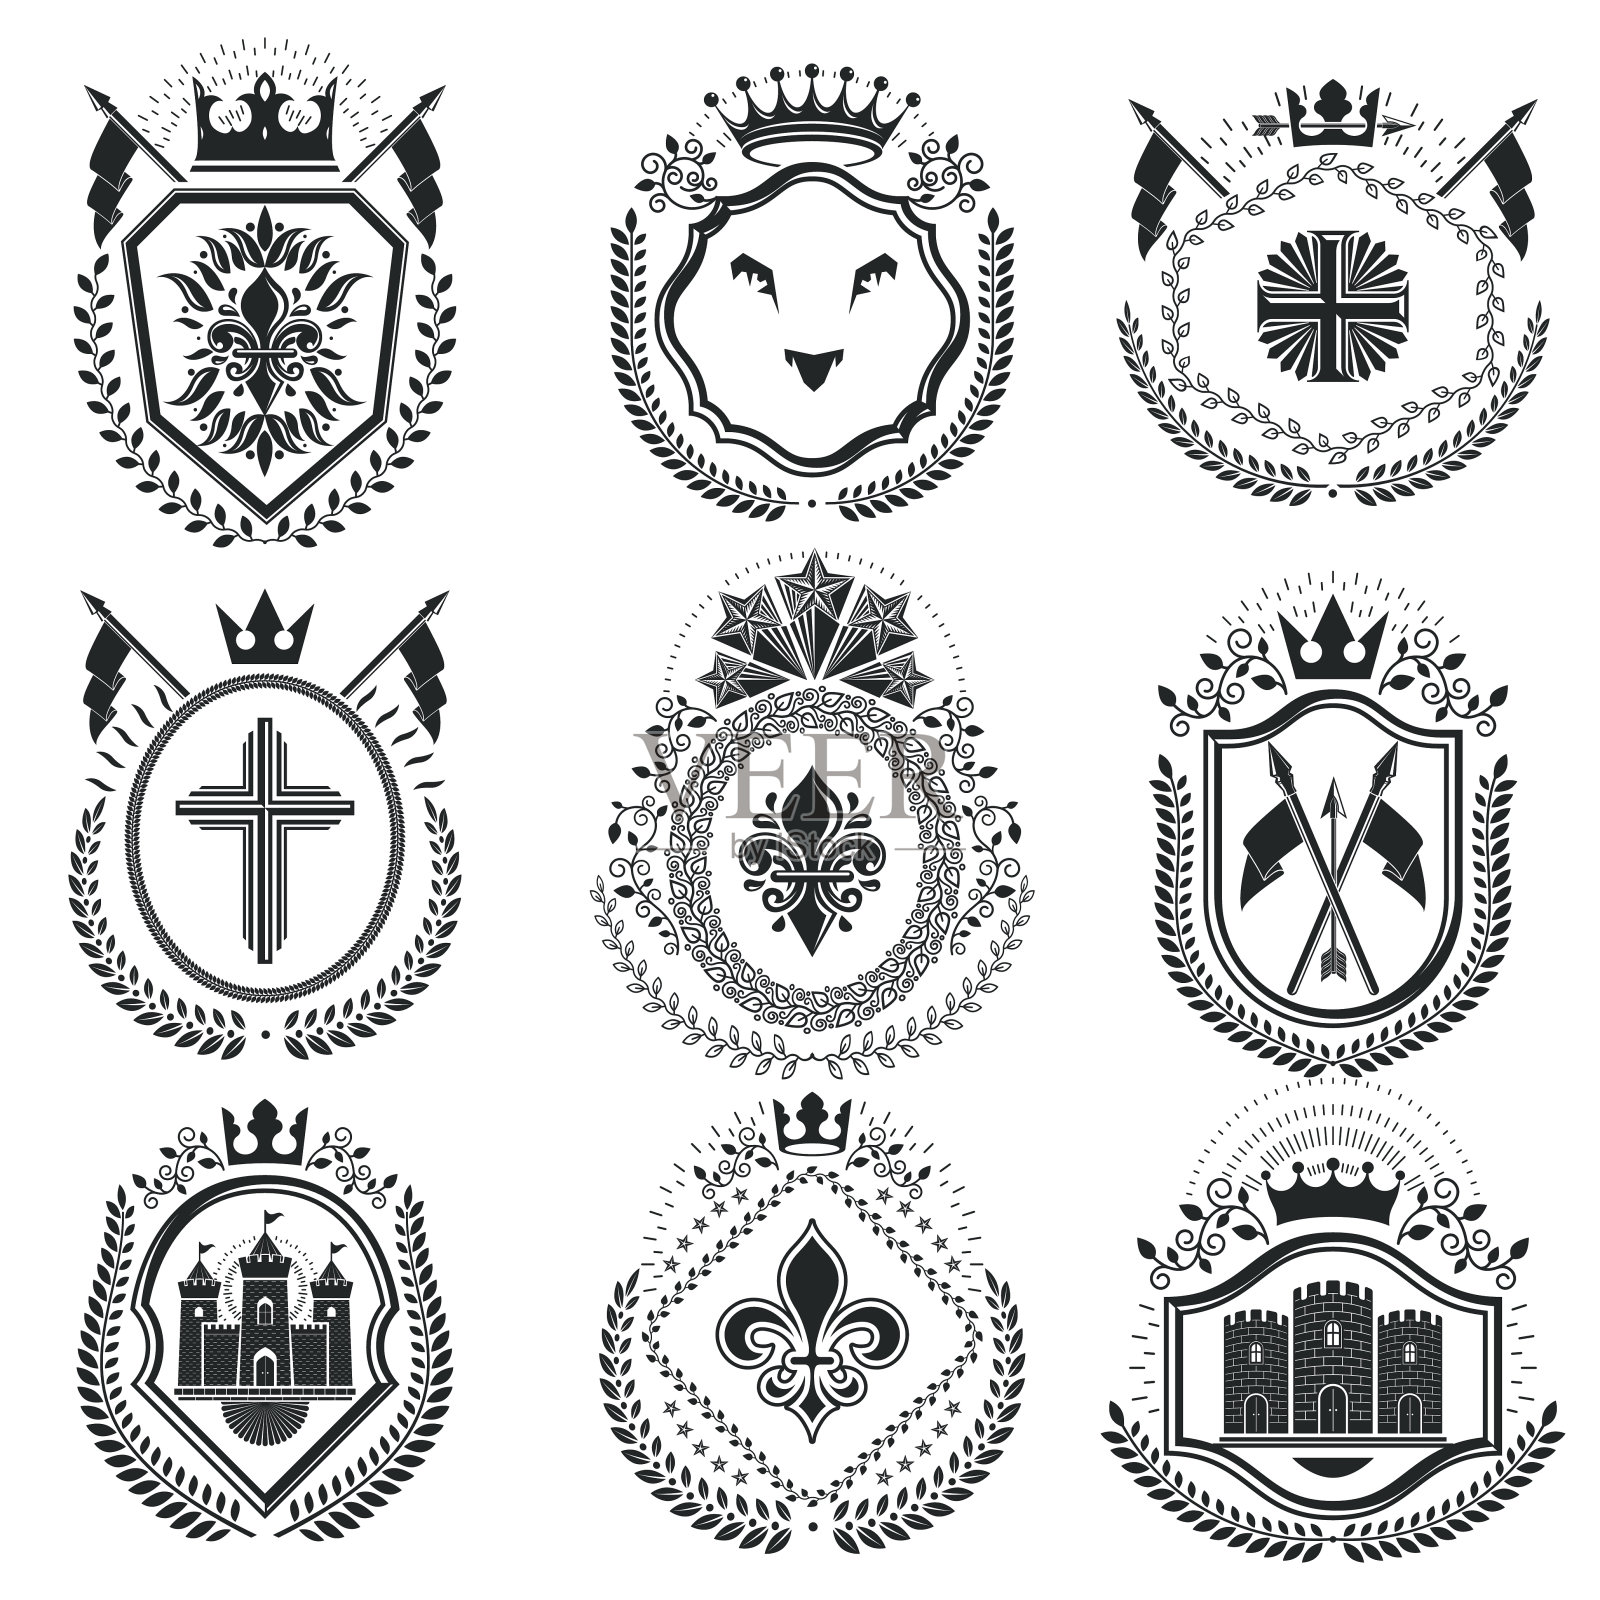 经典的徽章，矢量纹章纹章。复古的设计元素插画图片素材